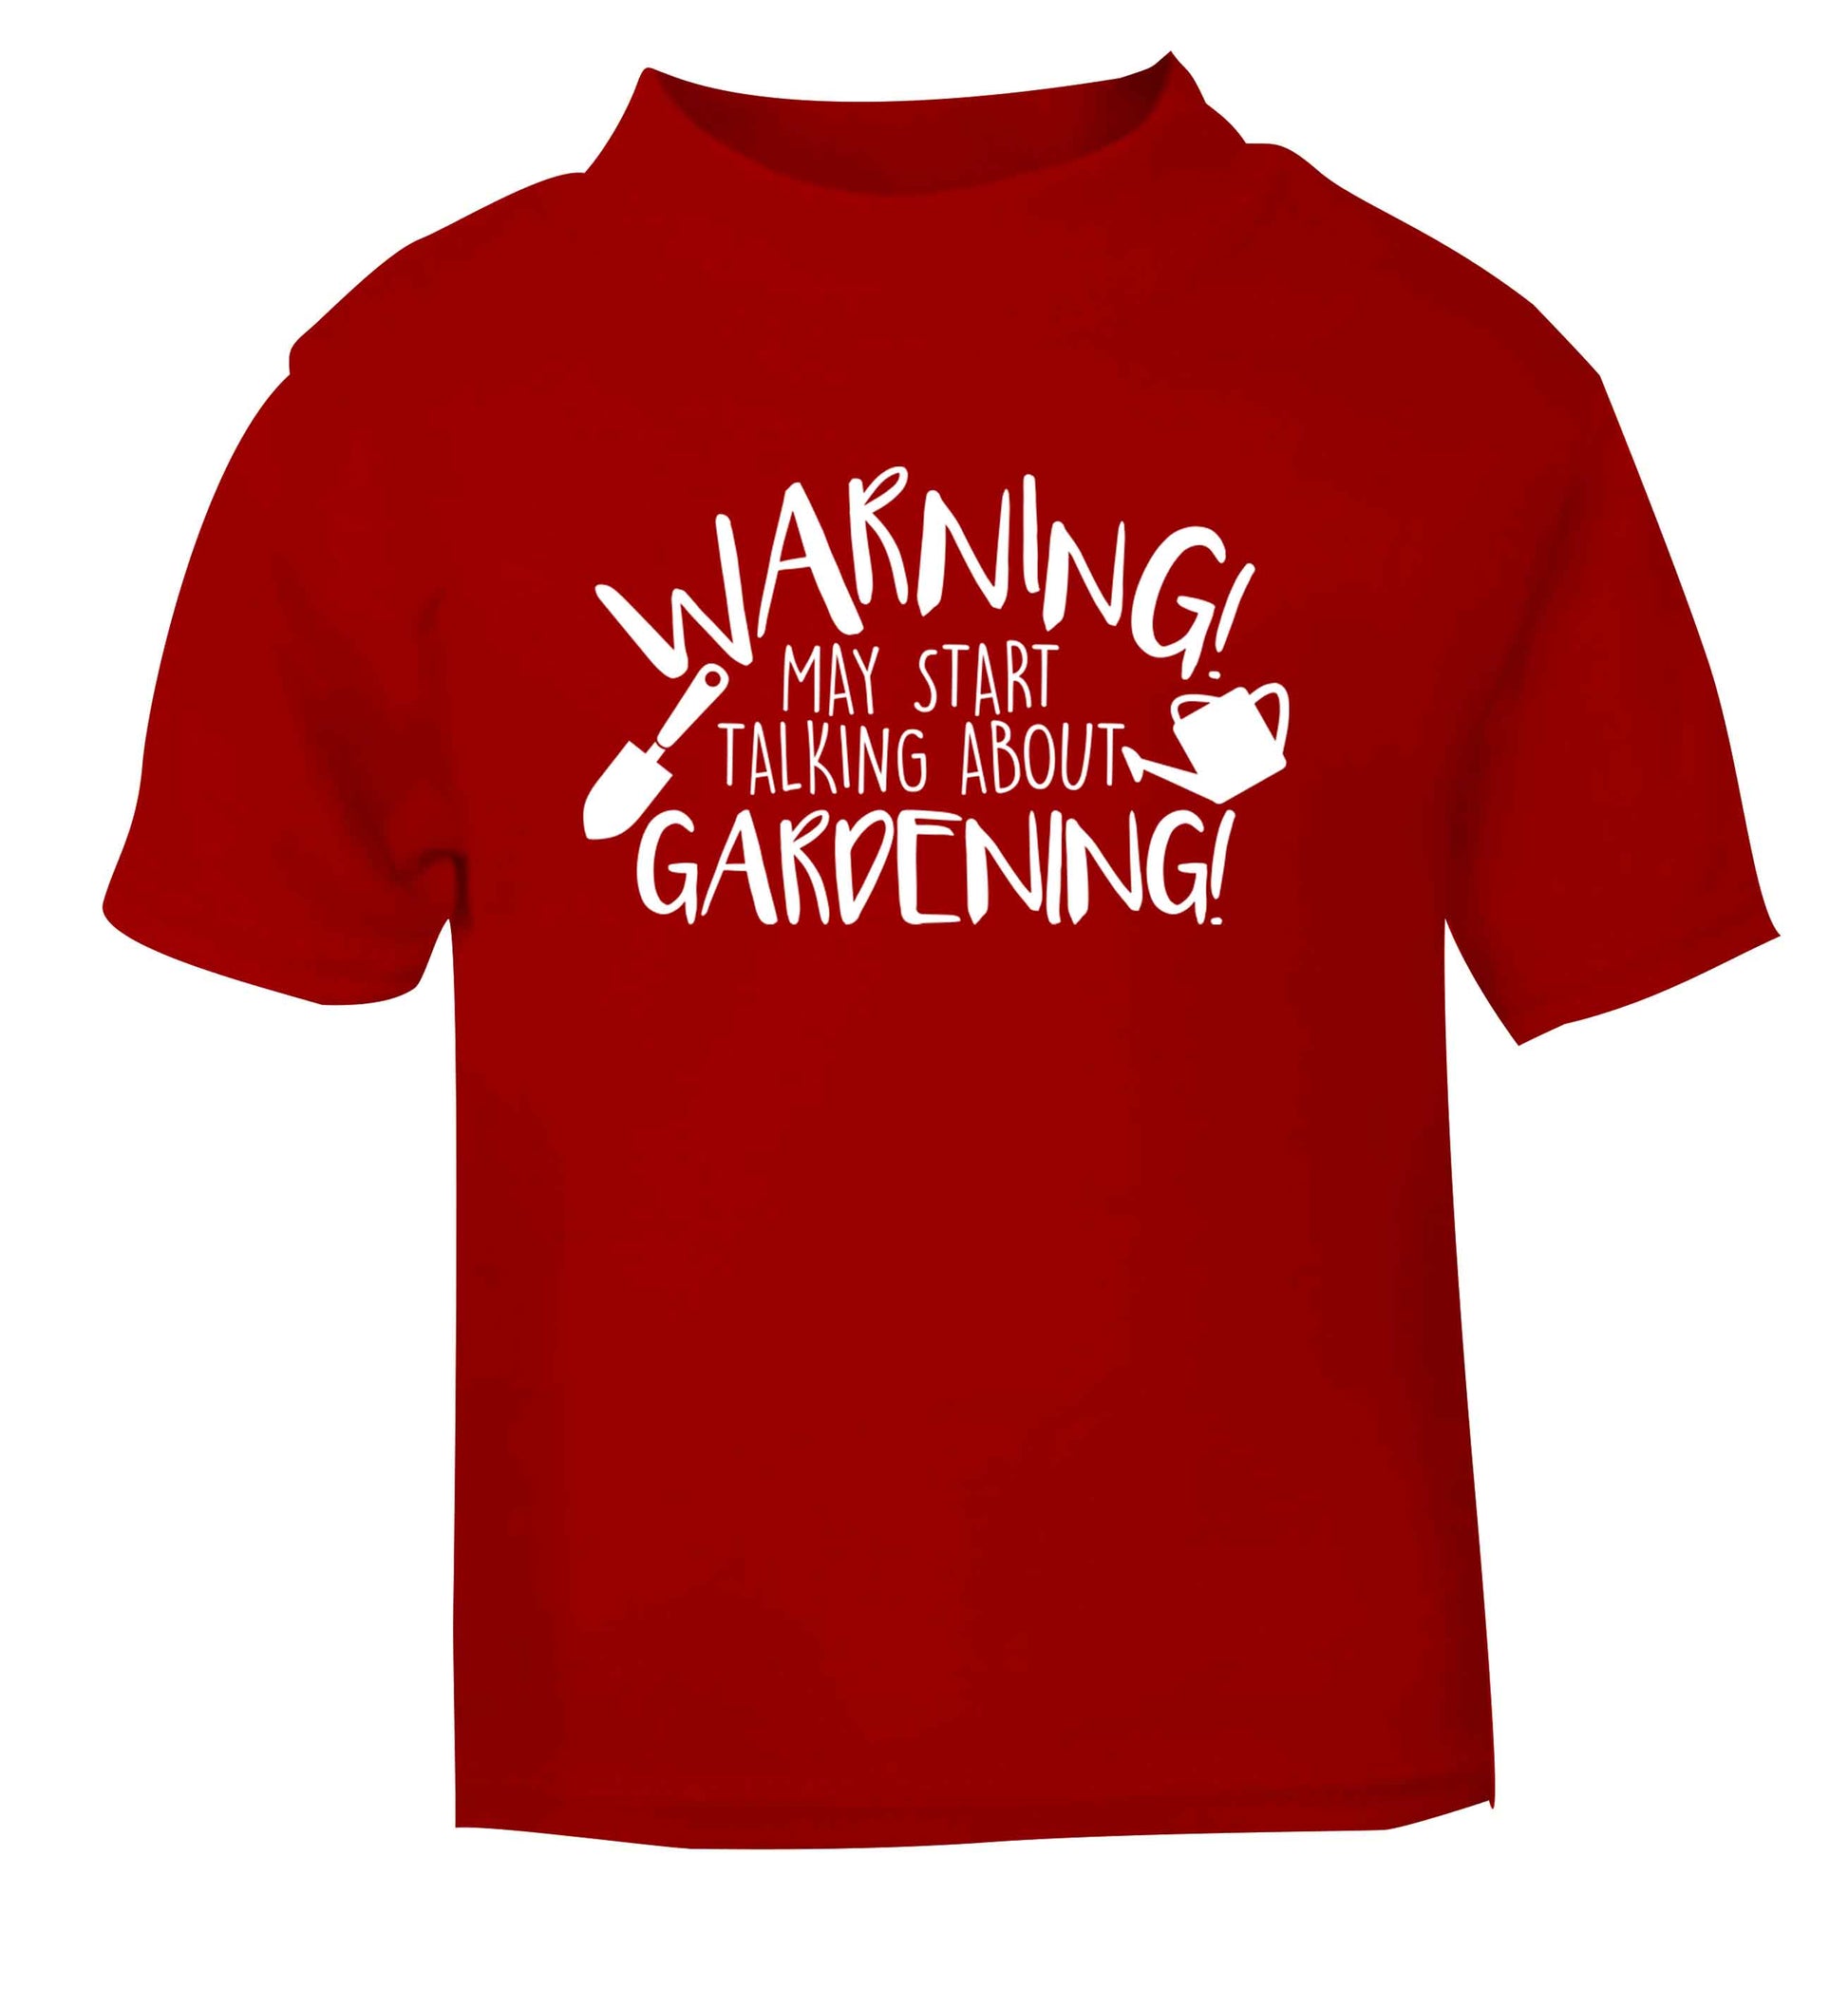 Warning may start talking about gardening red Baby Toddler Tshirt 2 Years